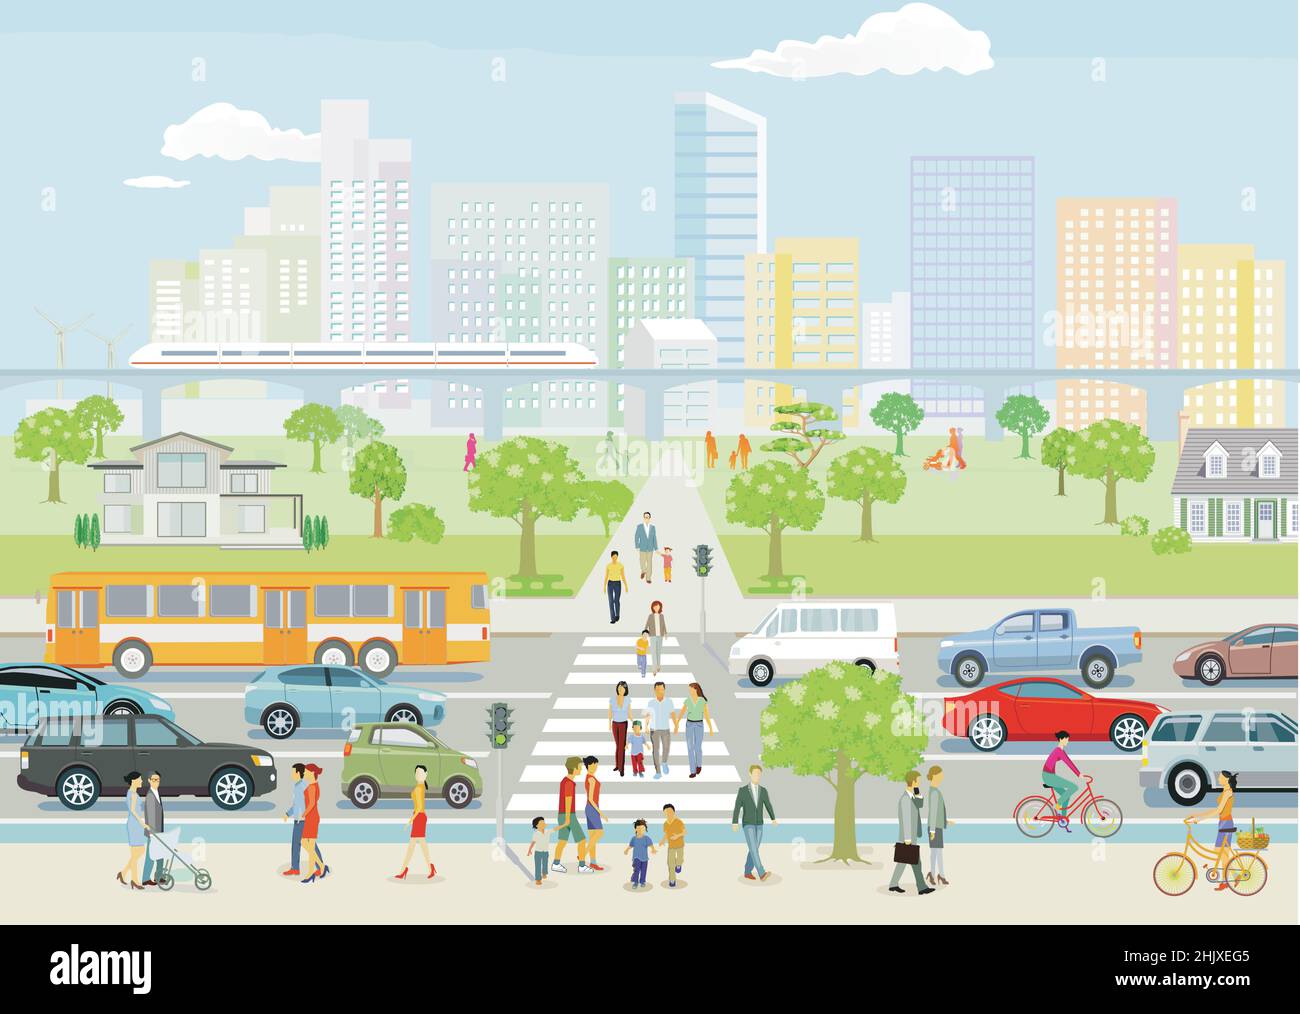 Silhouette der Stadt mit Menschen auf dem Fußgängerweg und Straßenverkehr, Illustration Stock Vektor